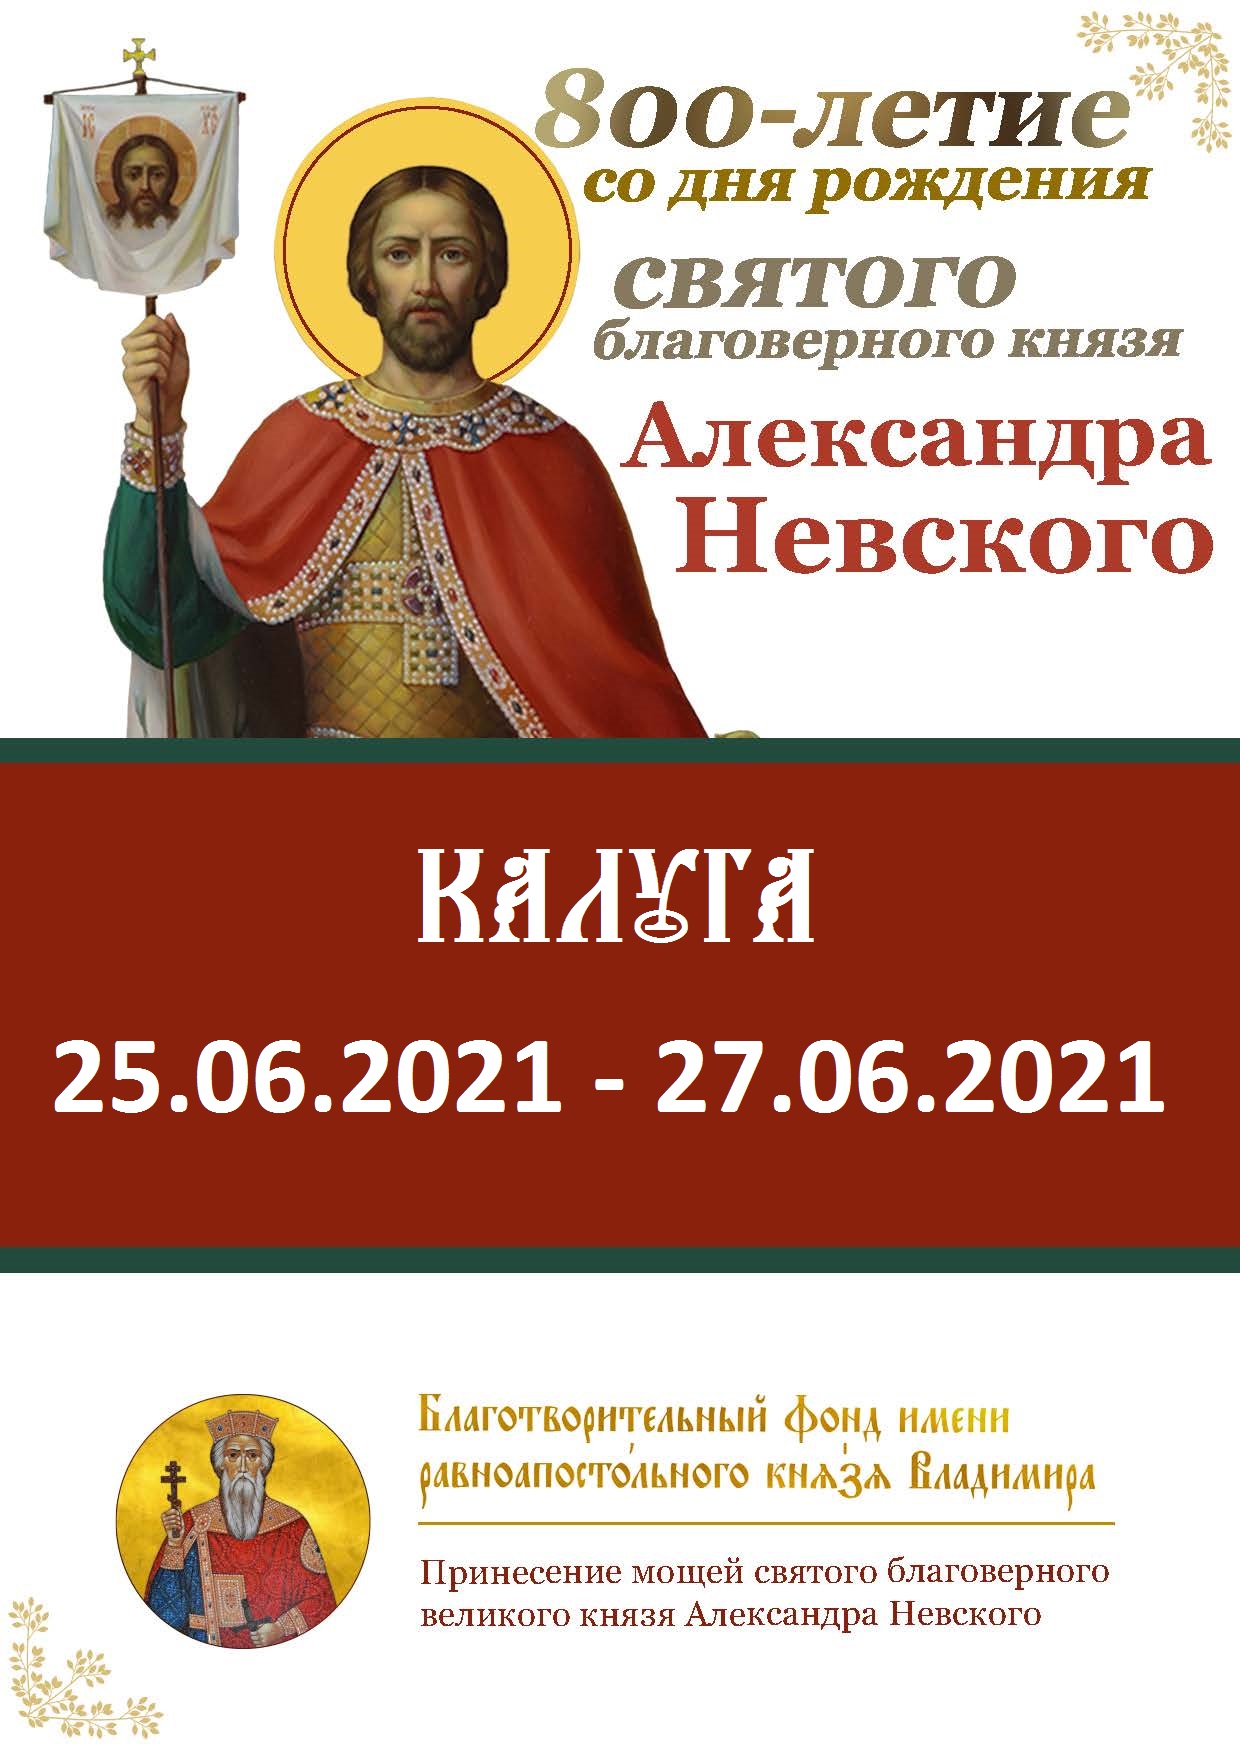 Принесение мощей святого благоверного великого князя Александра Невского в год 800-летия со дня его рождения в город Калугу